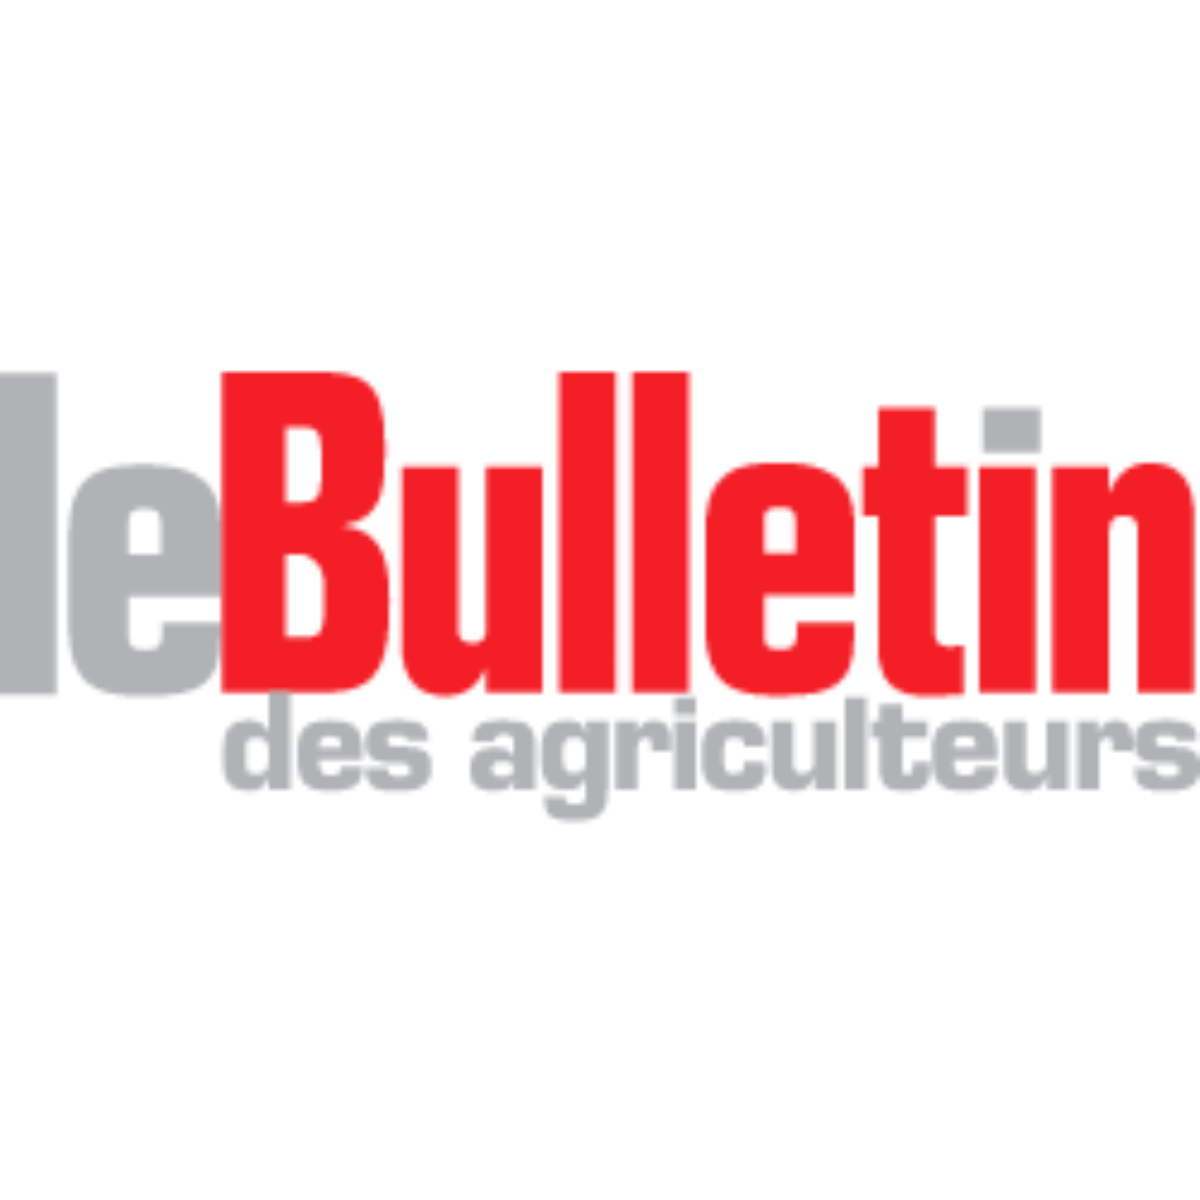 Le Bulletin des agriculteurs